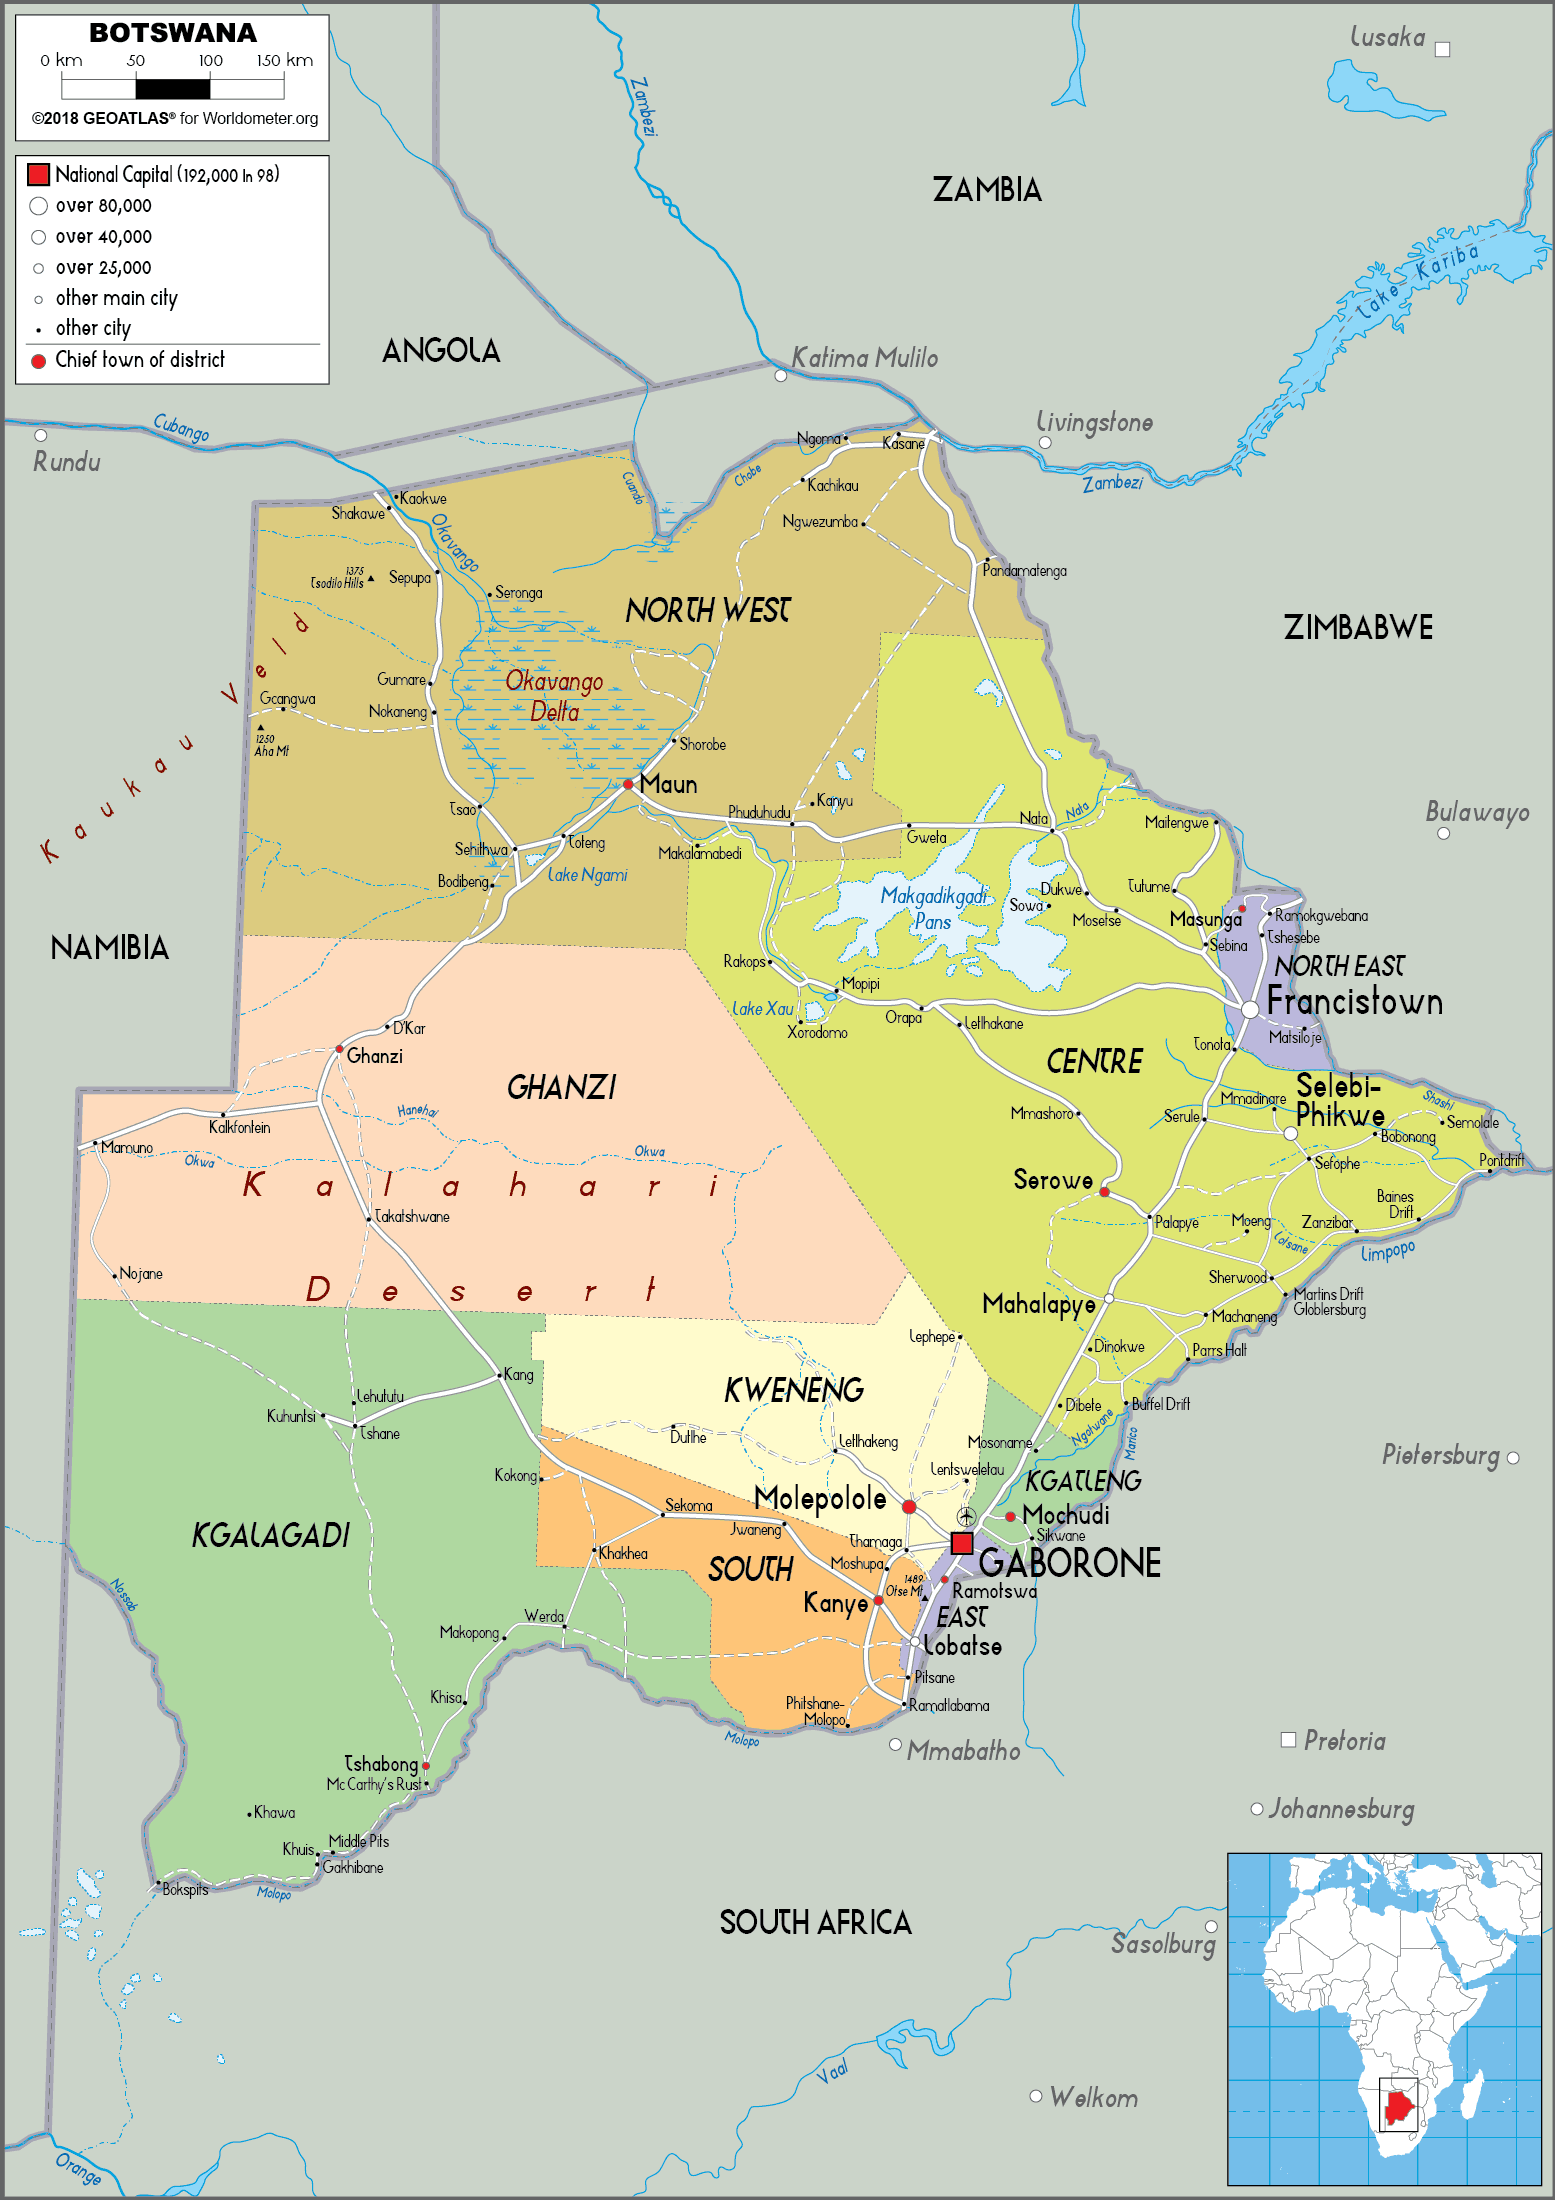 [Update] Bản đồ hành chính đất nước Botswana (Botswana Map) phóng to năm 2022 19